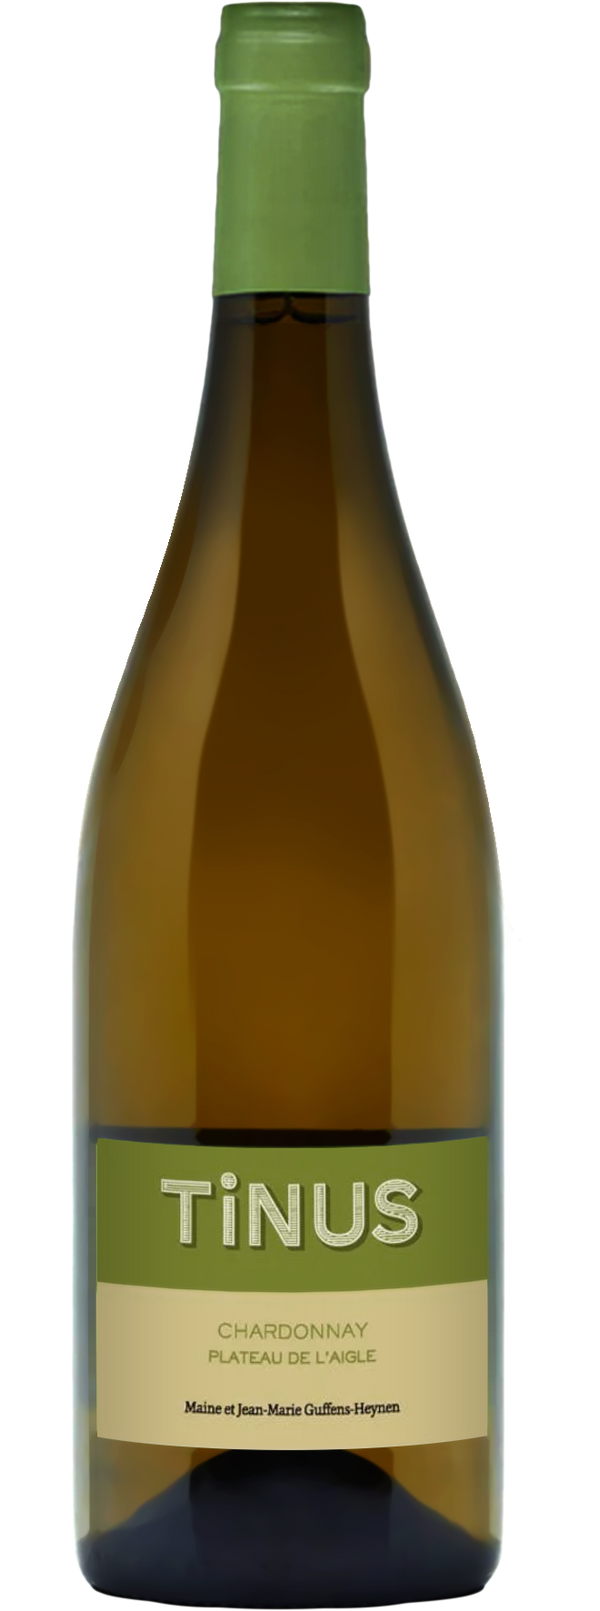 Château des Tourettes Vin de France Tinus Grand Blanc Chardonnay 2017